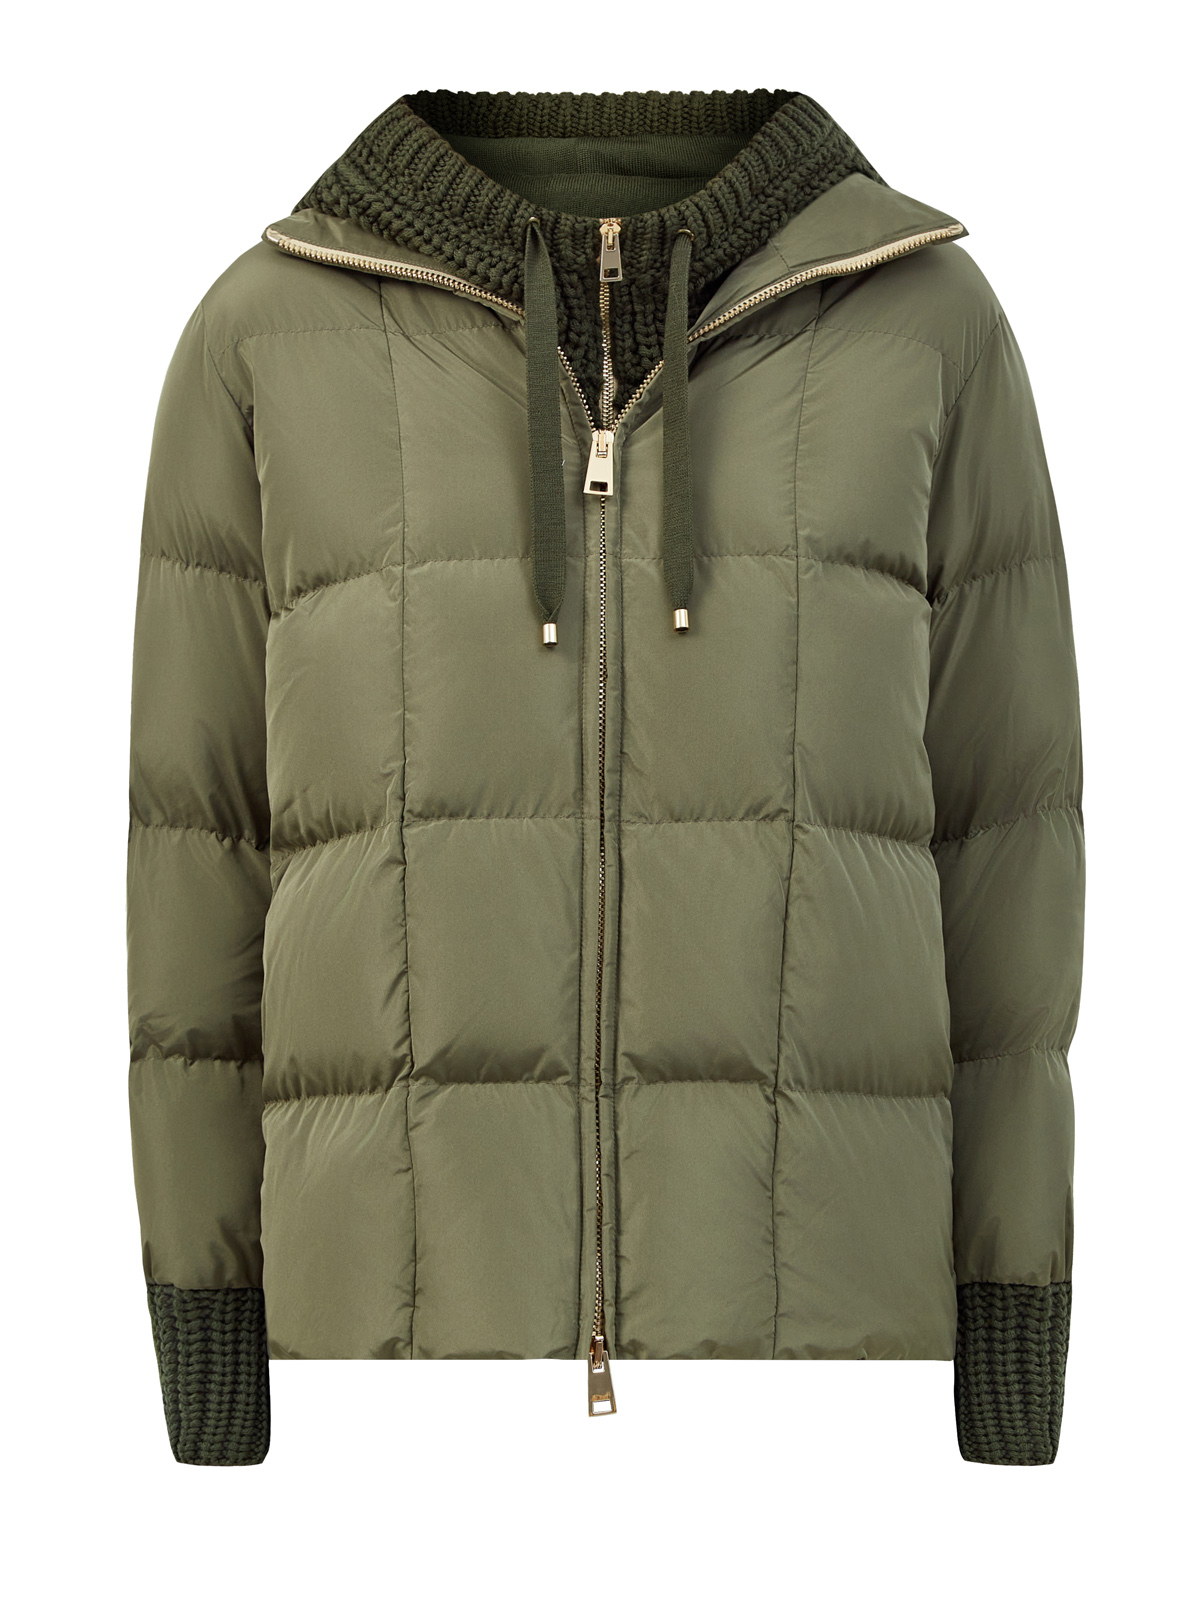 Стеганая куртка со съемным жилетом из шерстяной пряжи LORENA ANTONIAZZI, цвет зеленый, размер 40;44